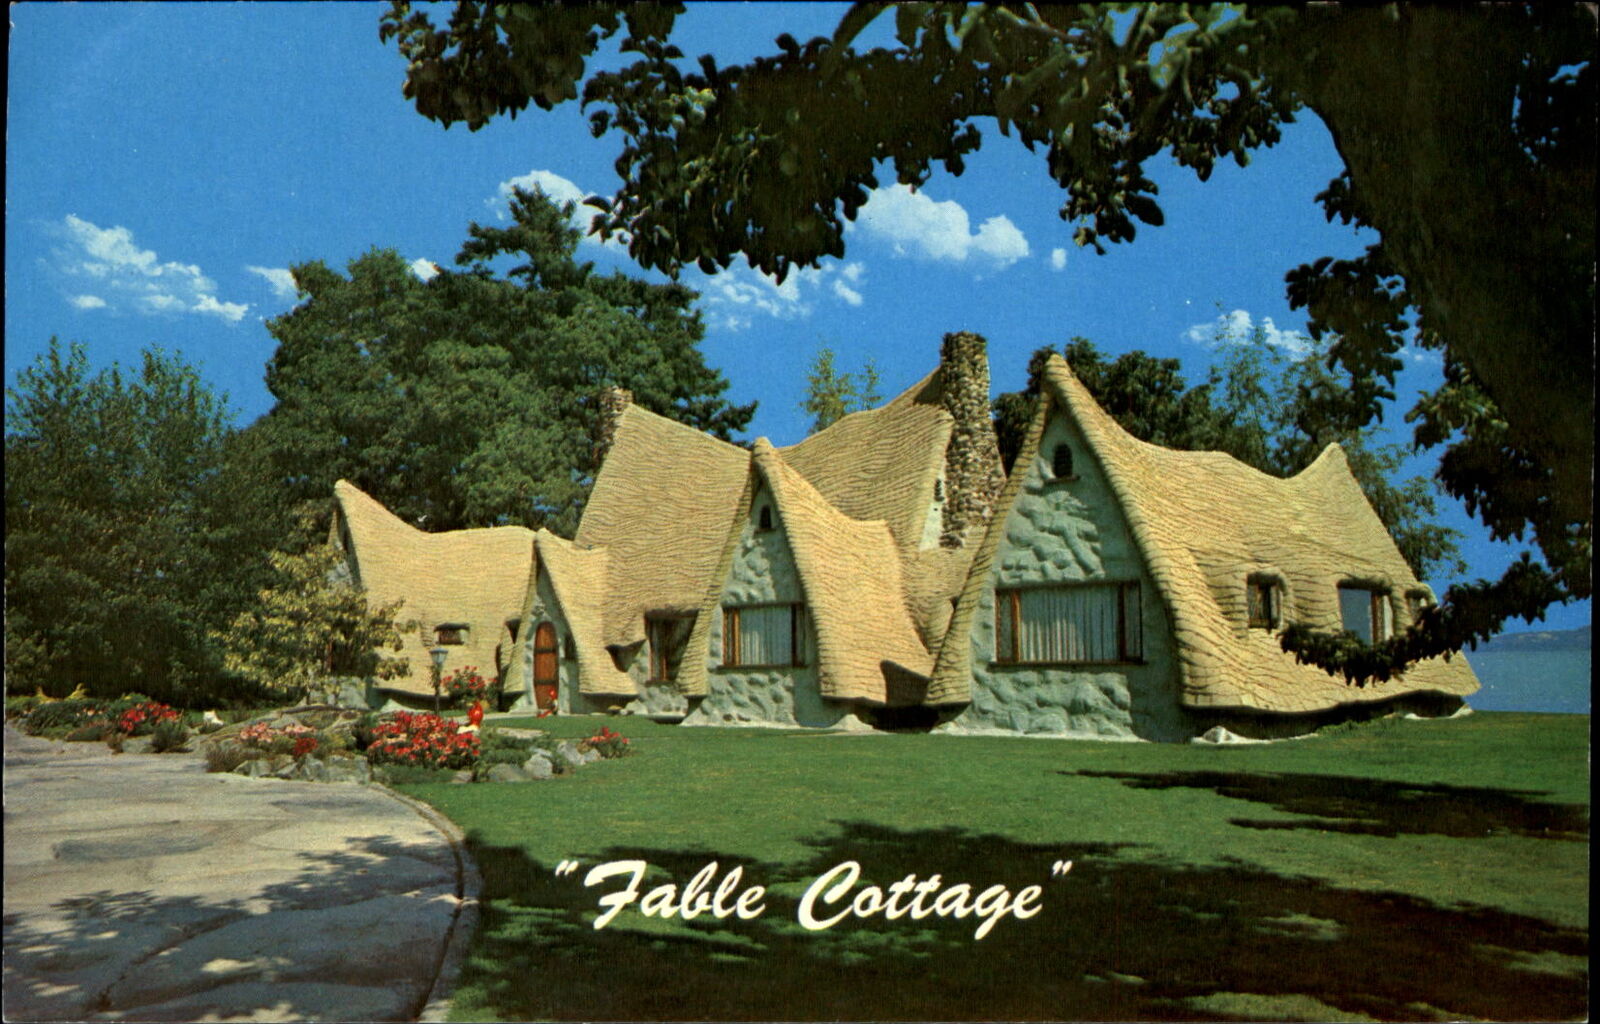 Fable Cottage Cordova Bay Victoria British Columbia artist Eastman architecture